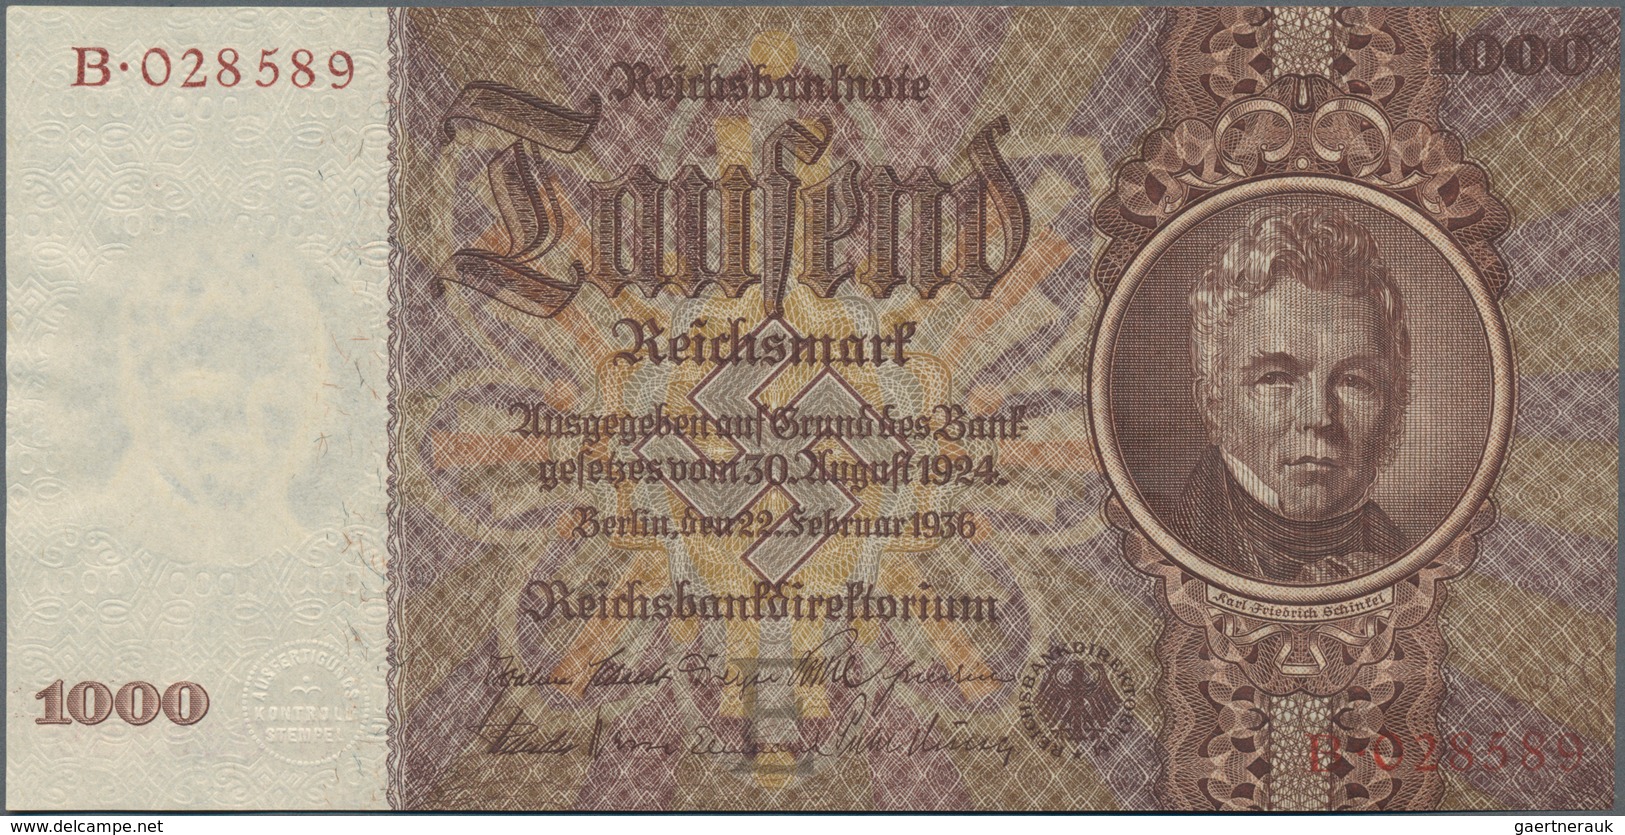 Deutschland - Sonstige: Album mit 43 Banknoten, dabei für die Ausgaben des Kaiserreiches 1000 Mark 1